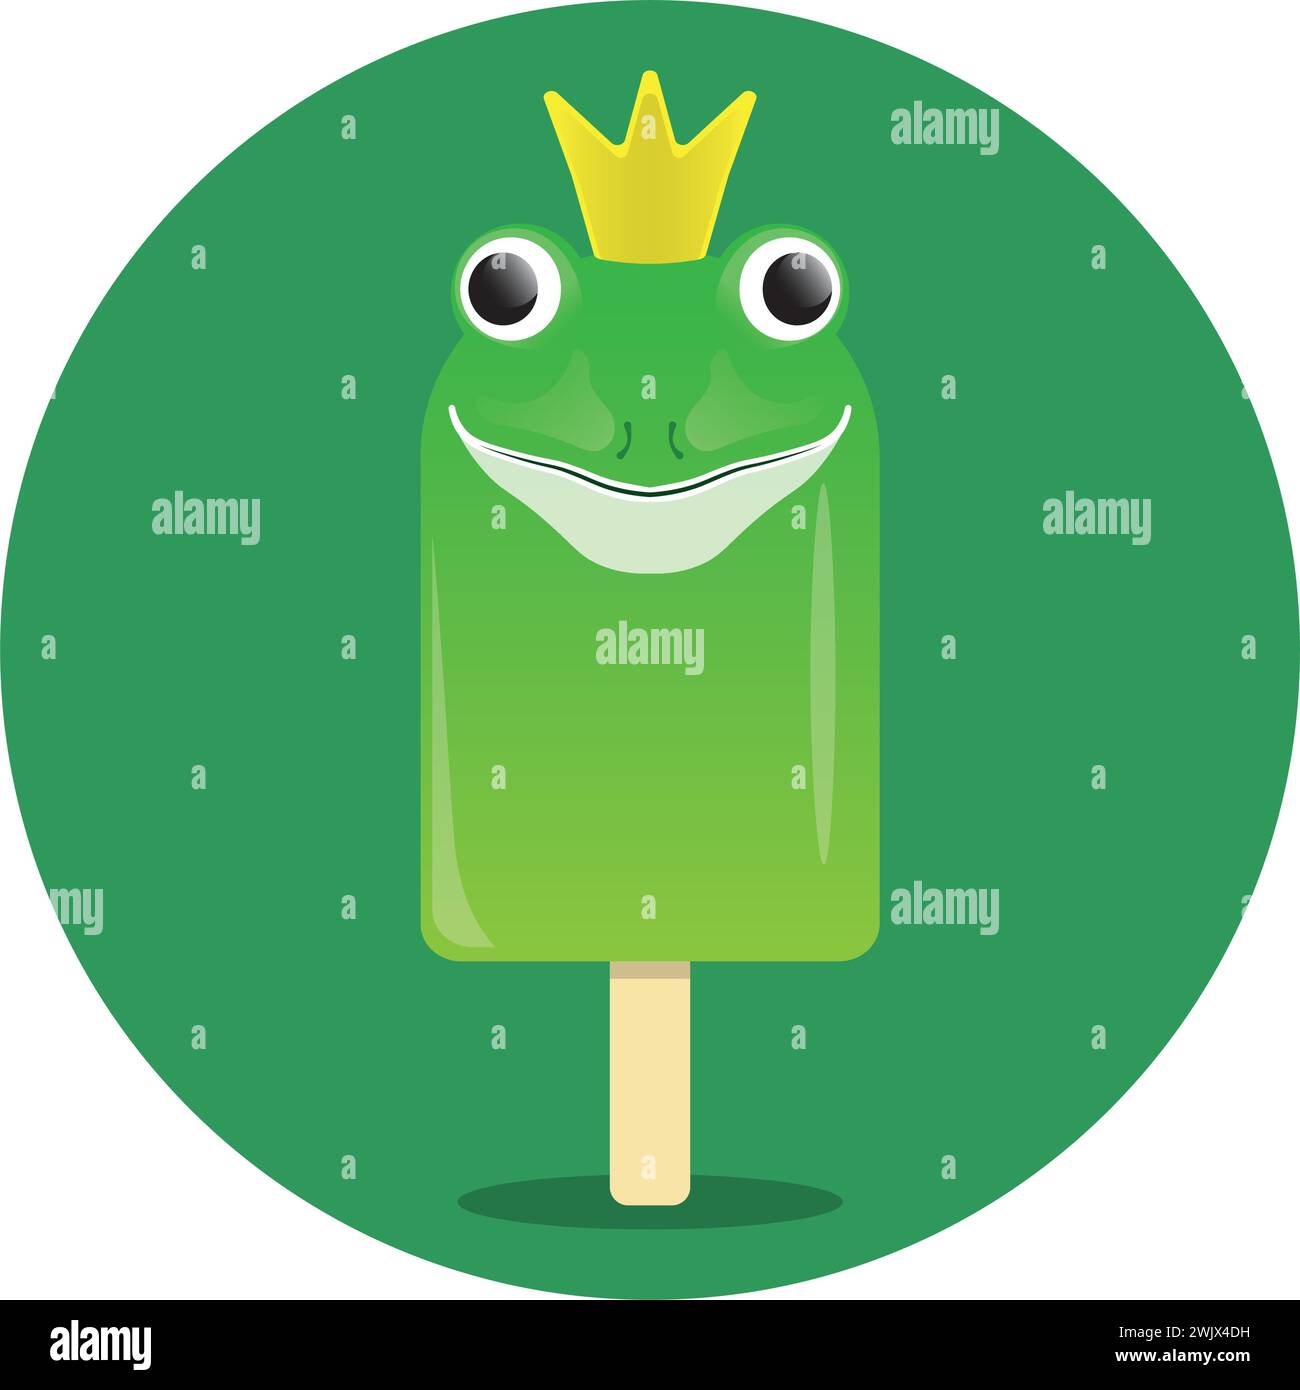 Skurriles grünes Froscheis mit Krone, das auf das Märchen des Froschprinzen verweist, der sich in einen menschlichen Prinzen verwandelt, wenn kis Stock Vektor